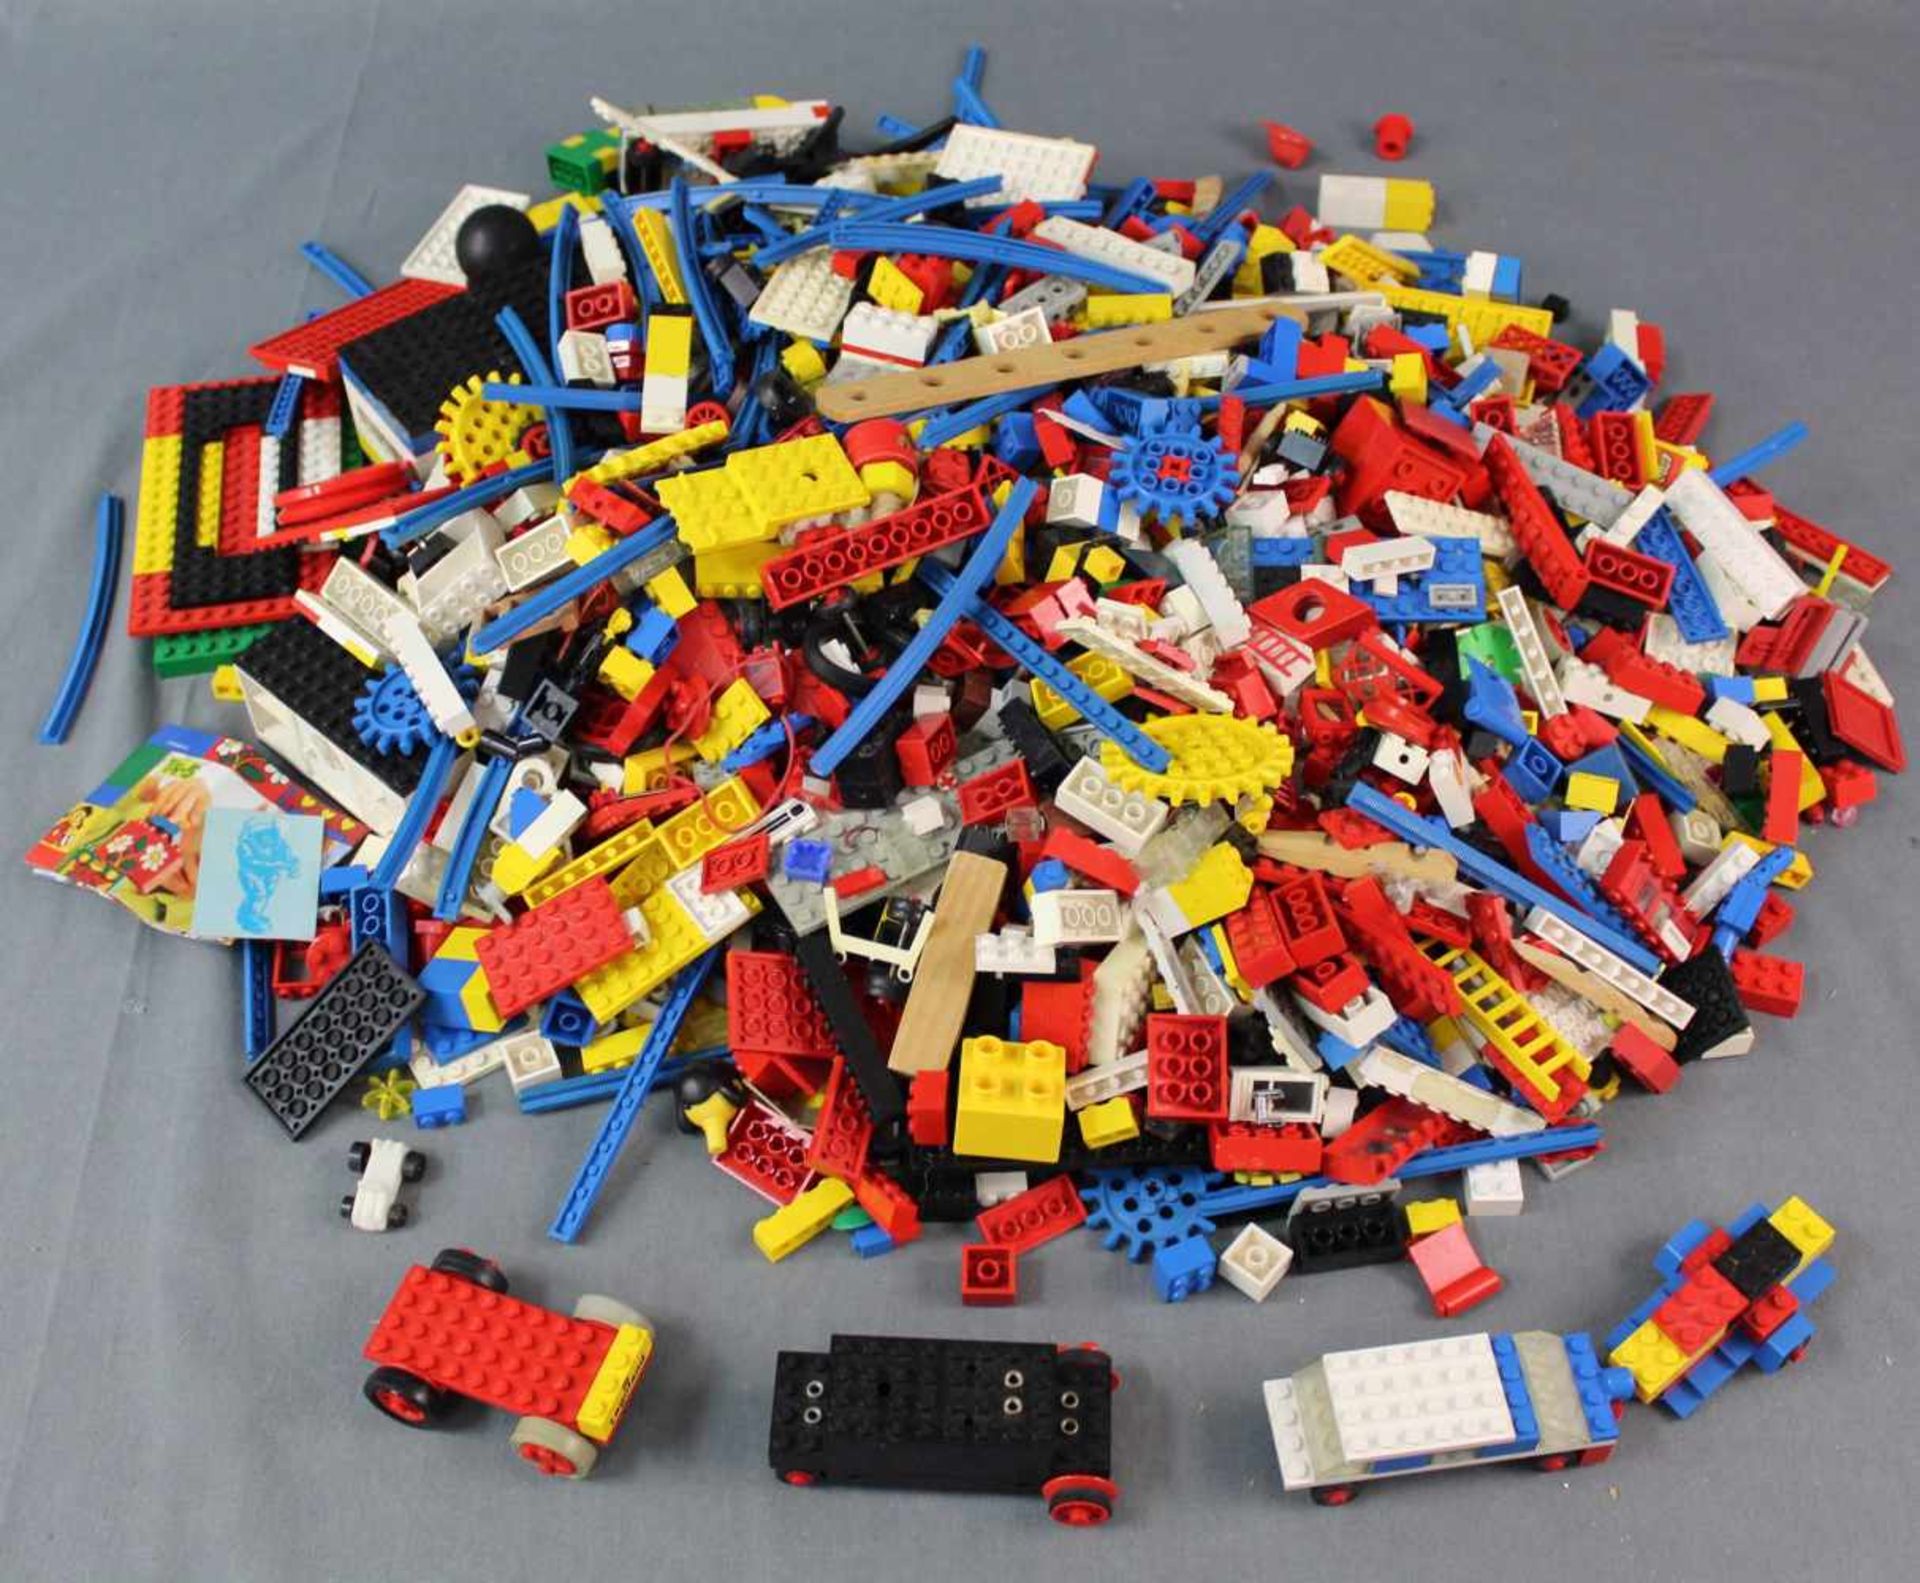 4,6 kg Lego Steine und Teile gemischt. Mindestens 4,6 kg gewogen. 4,6 kg Lego stones and parts. - Bild 2 aus 4